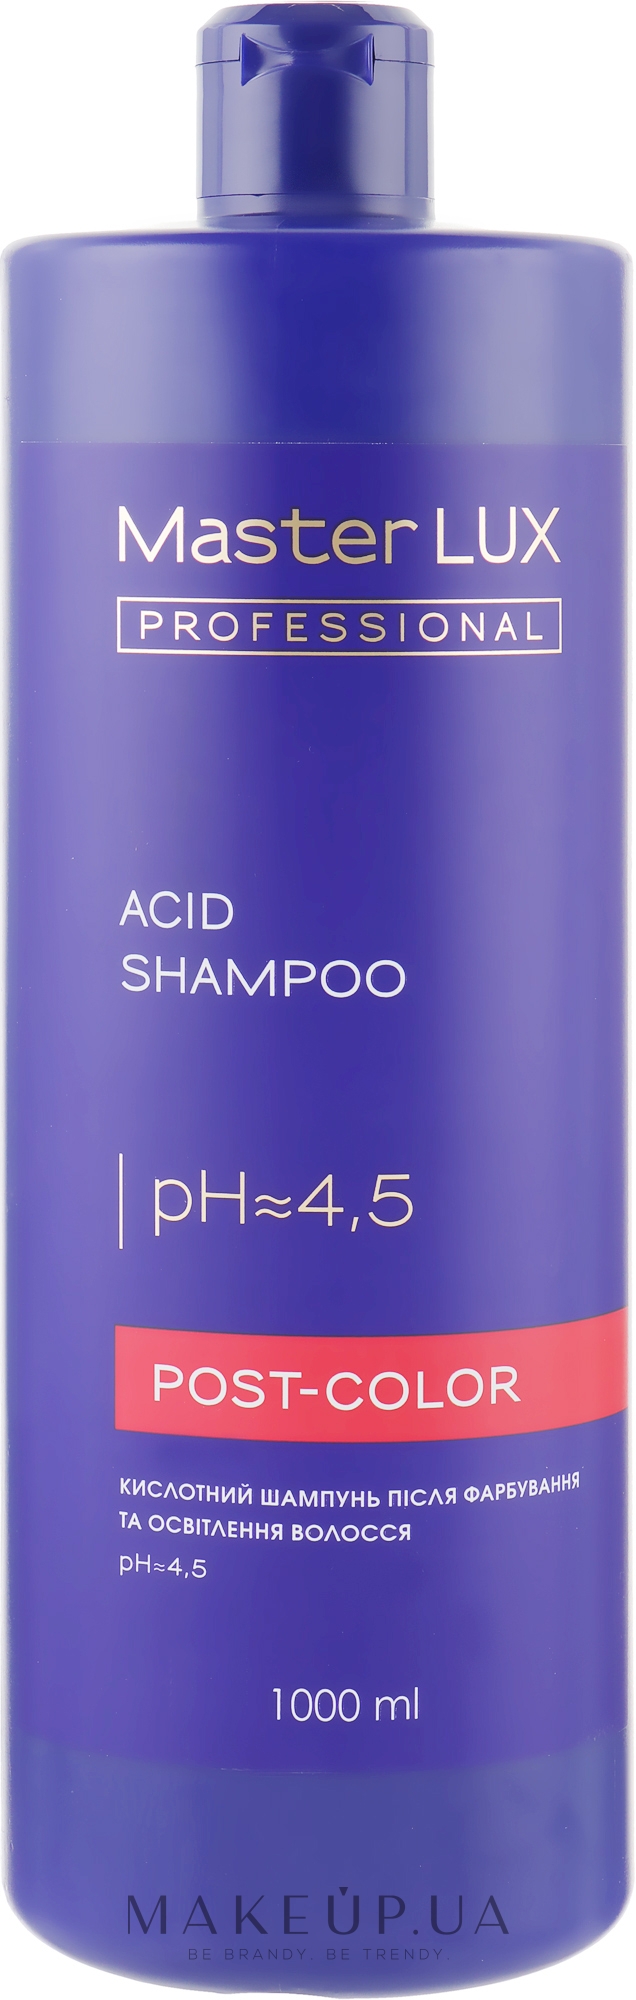 Кислотний шампунь после окрашивания и осветления волос - Master LUX Professional Acid Shampoo Post Color — фото 1000ml